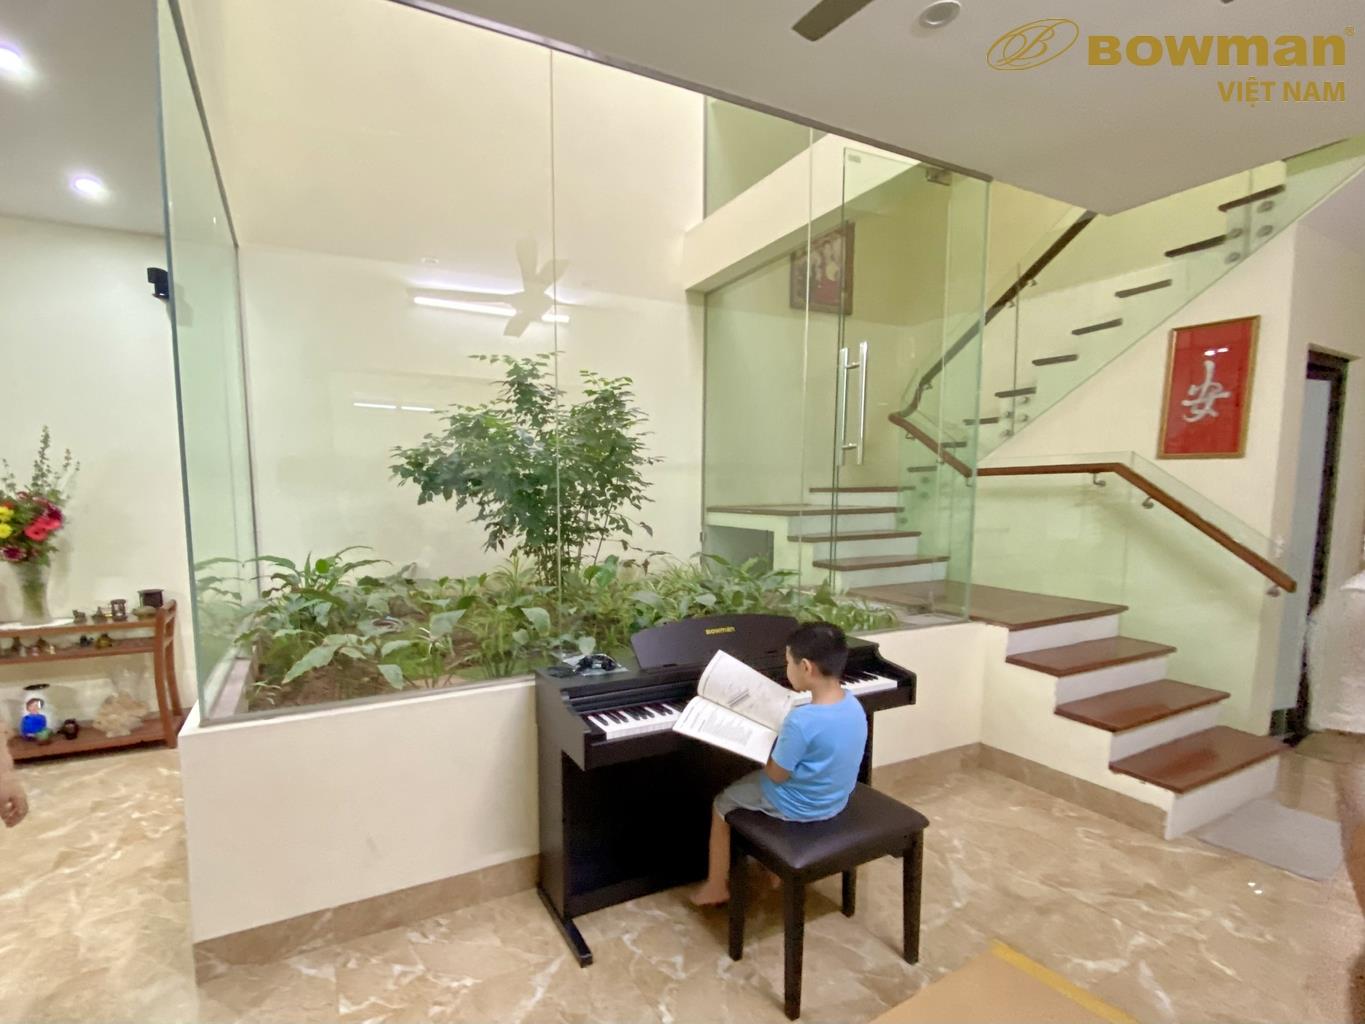 Hướng dẫn bạn nhỏ sử dụng đàn Piano BOWMAN CX250 tại Ngọc Thụy - Long Biên